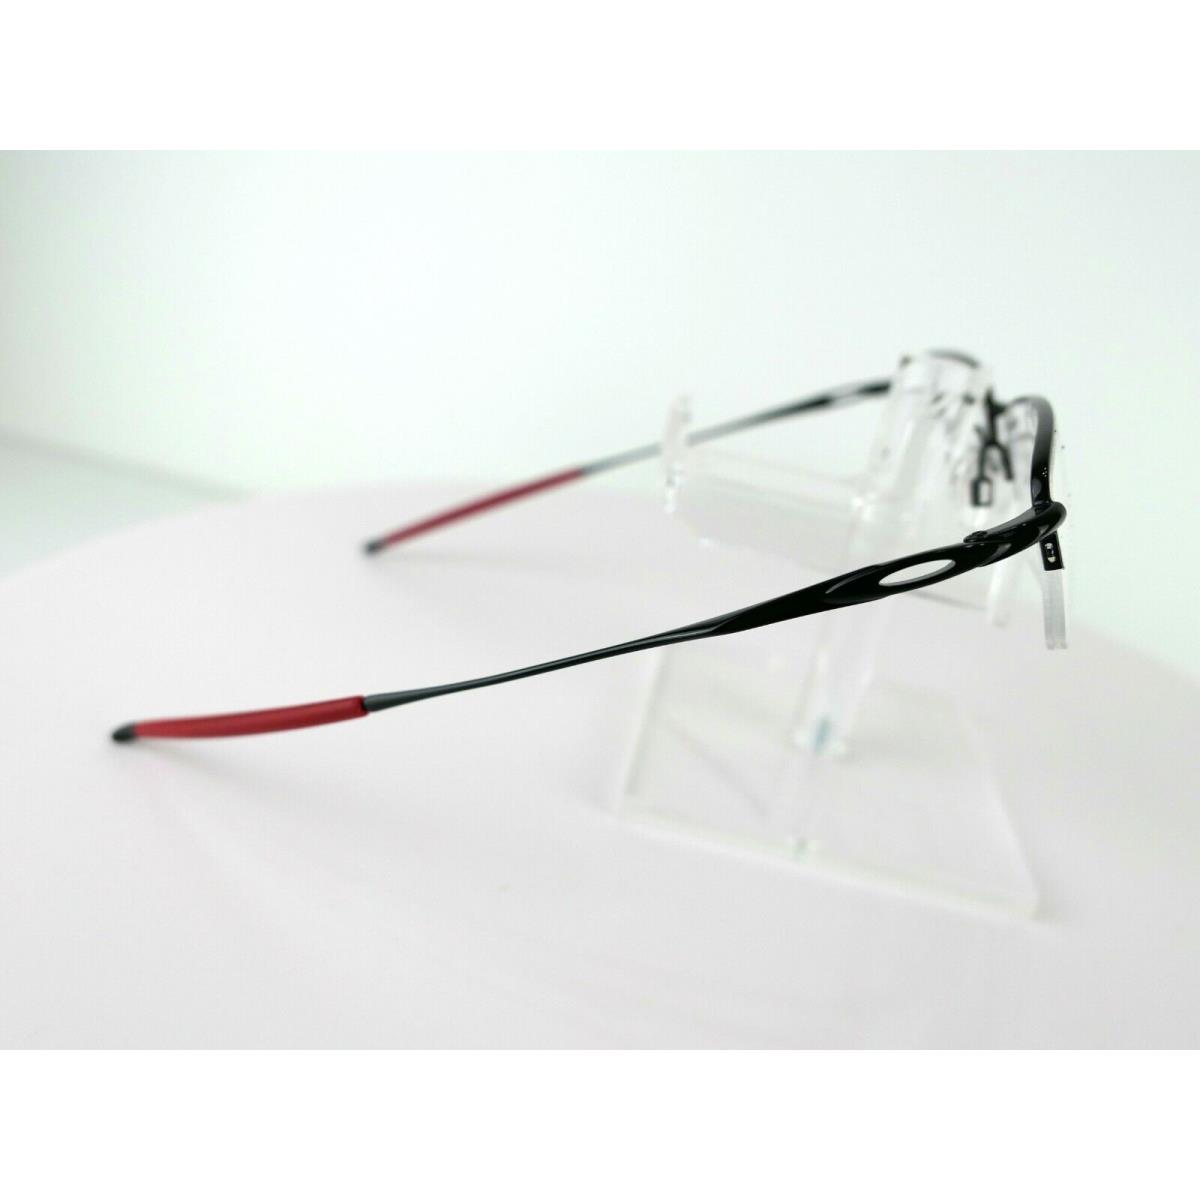 Oakley eyeglasses  - Black , Polished Black / Red Frame 5